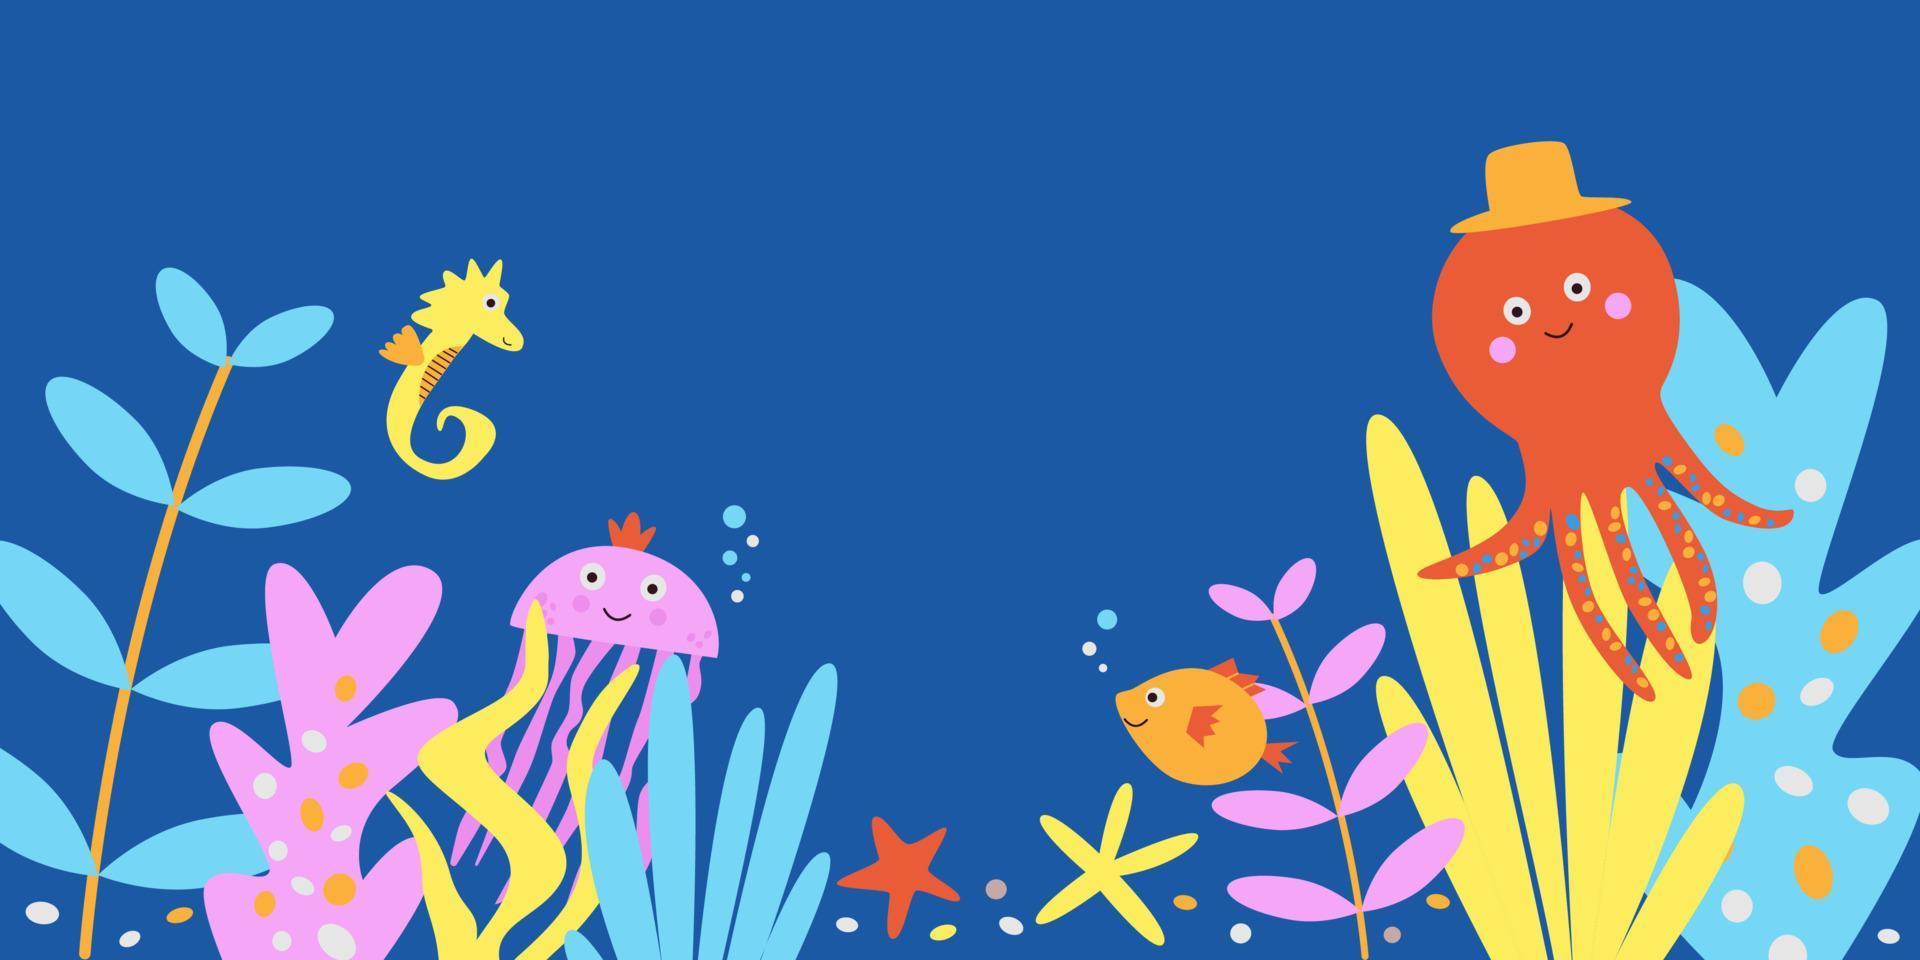 illustrazione di simpatici animali marini - polpo, meduse, cavalluccio marino che nuota sott'acqua. banner divertente per inviti per bambini, biglietti di auguri o stampa su qualsiasi superficie vettore